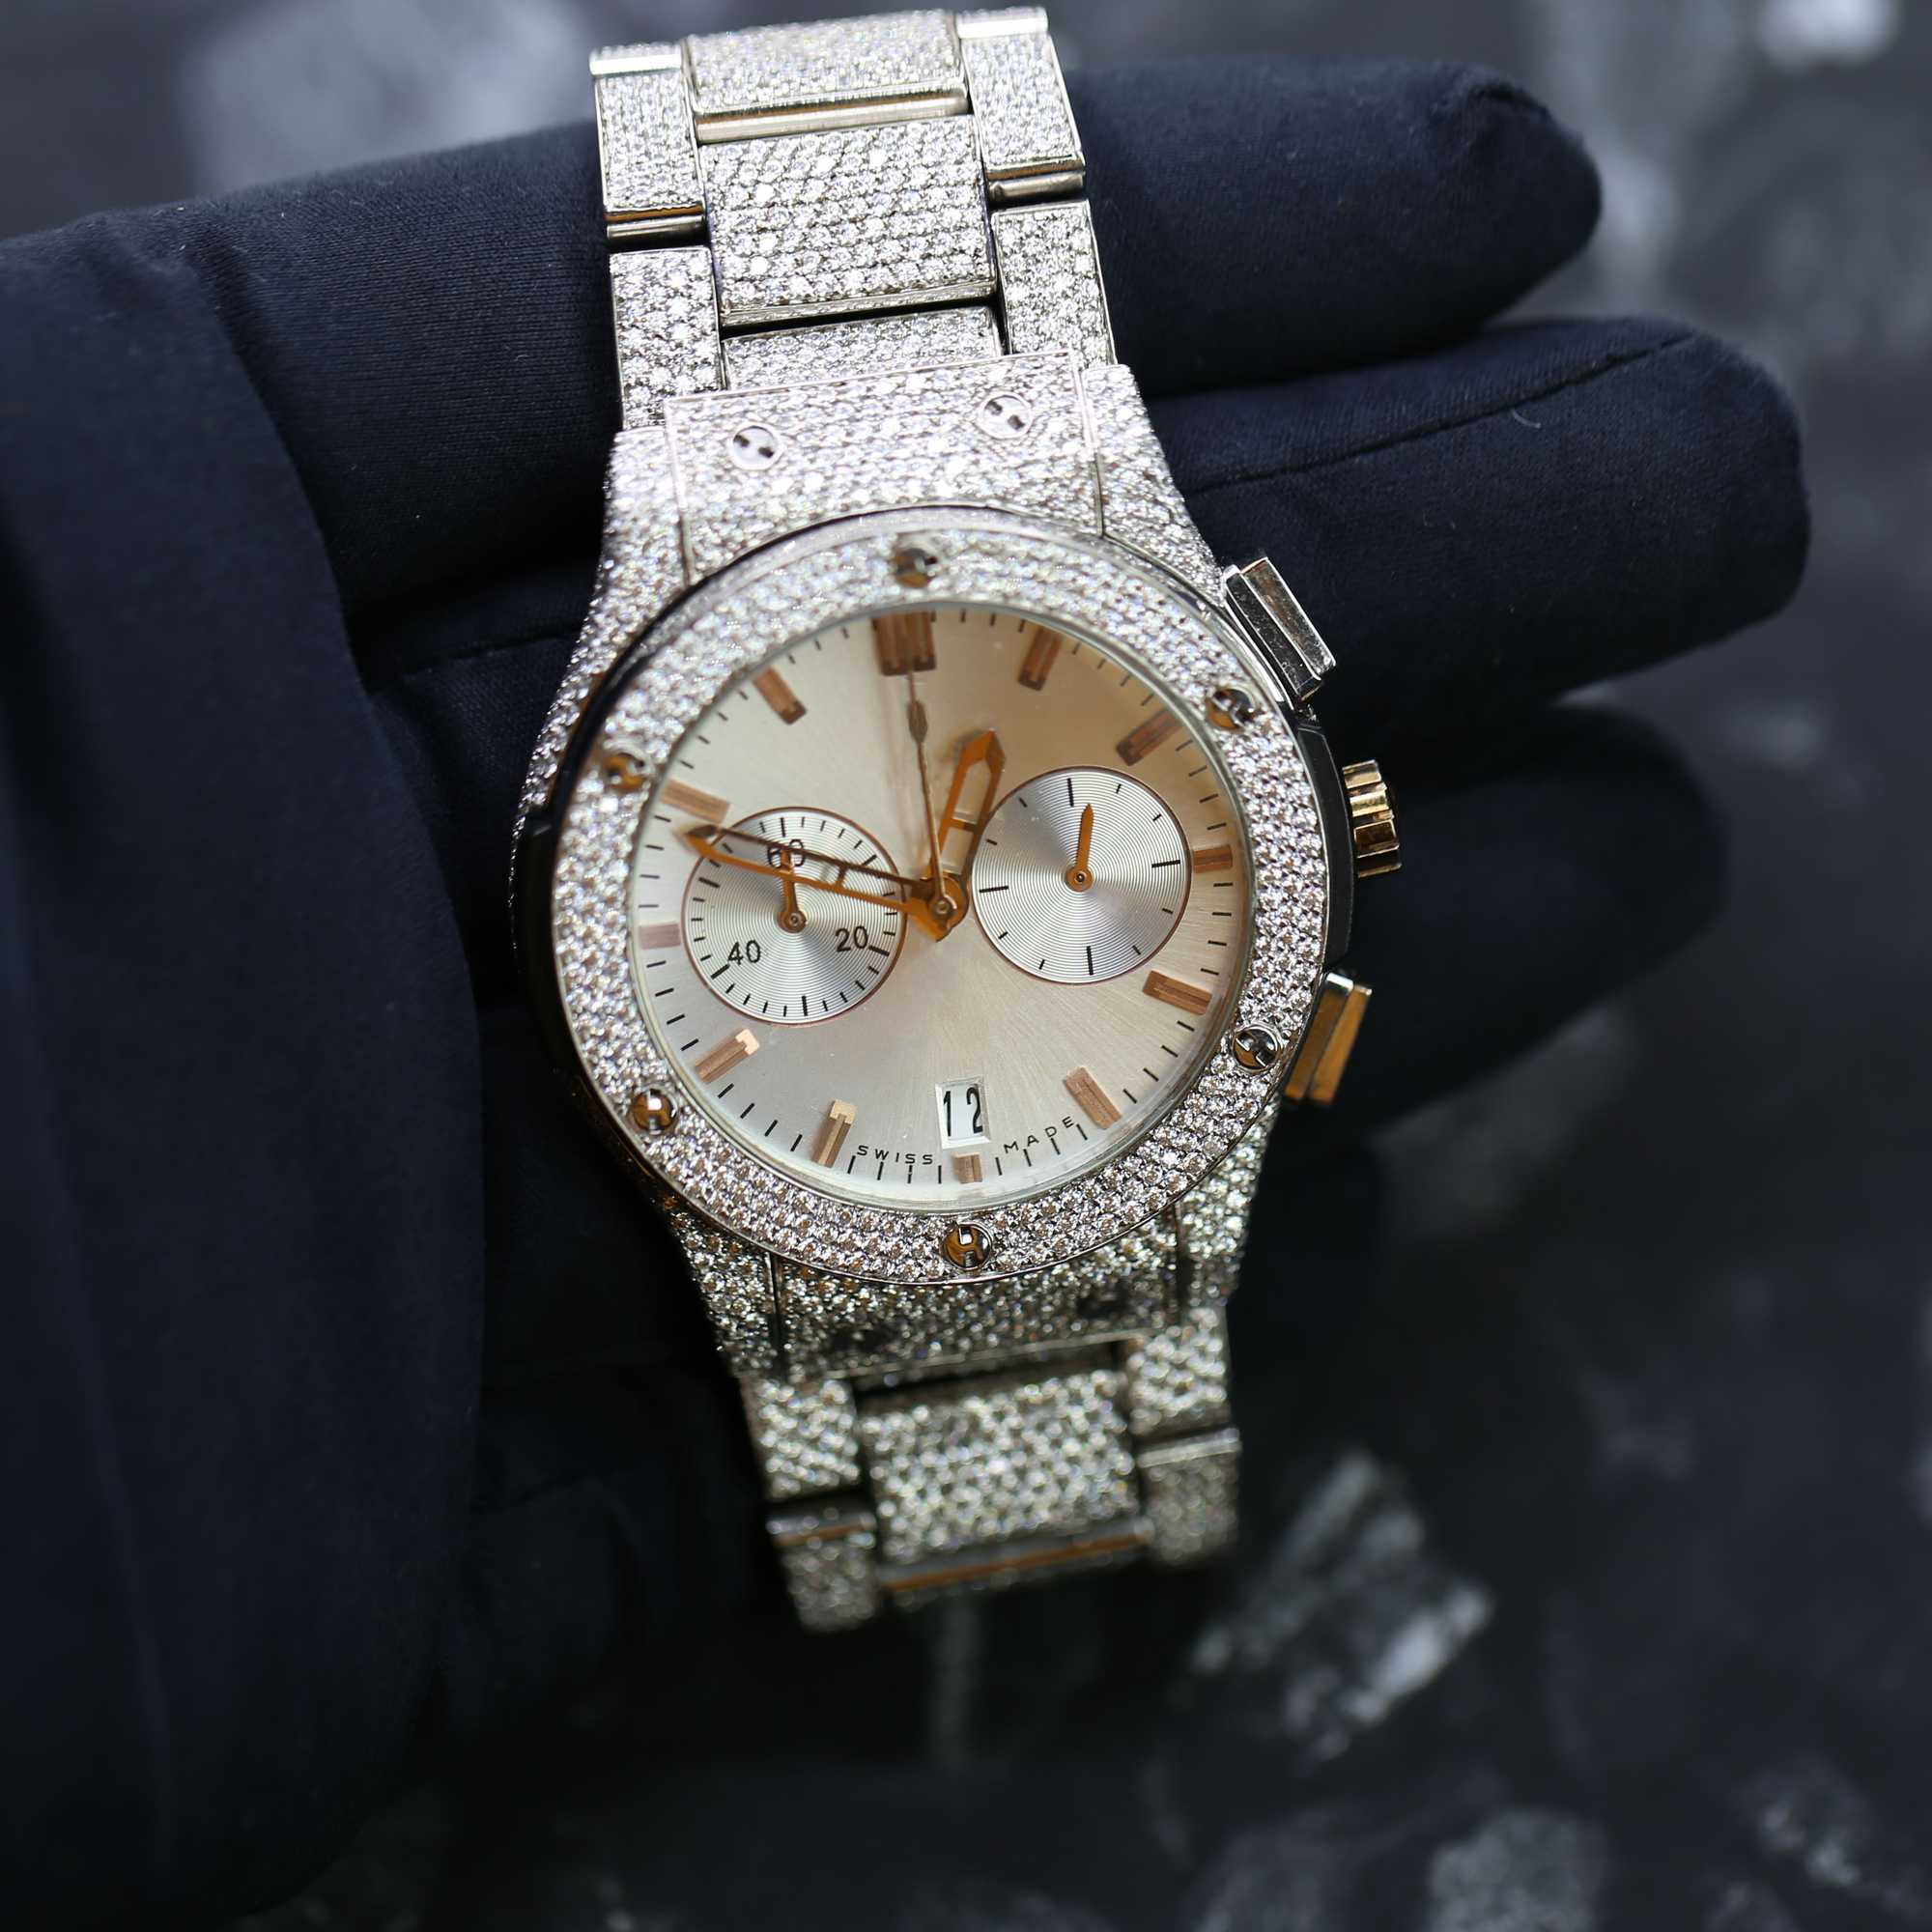 다른 시계 손목 시계 아이스 아웃 사용자 정의 다이아몬드 럭셔리 남성 시계 수제 고급 보석 제조업체 VVS1 다이아몬드 WatchFPR8RKDV